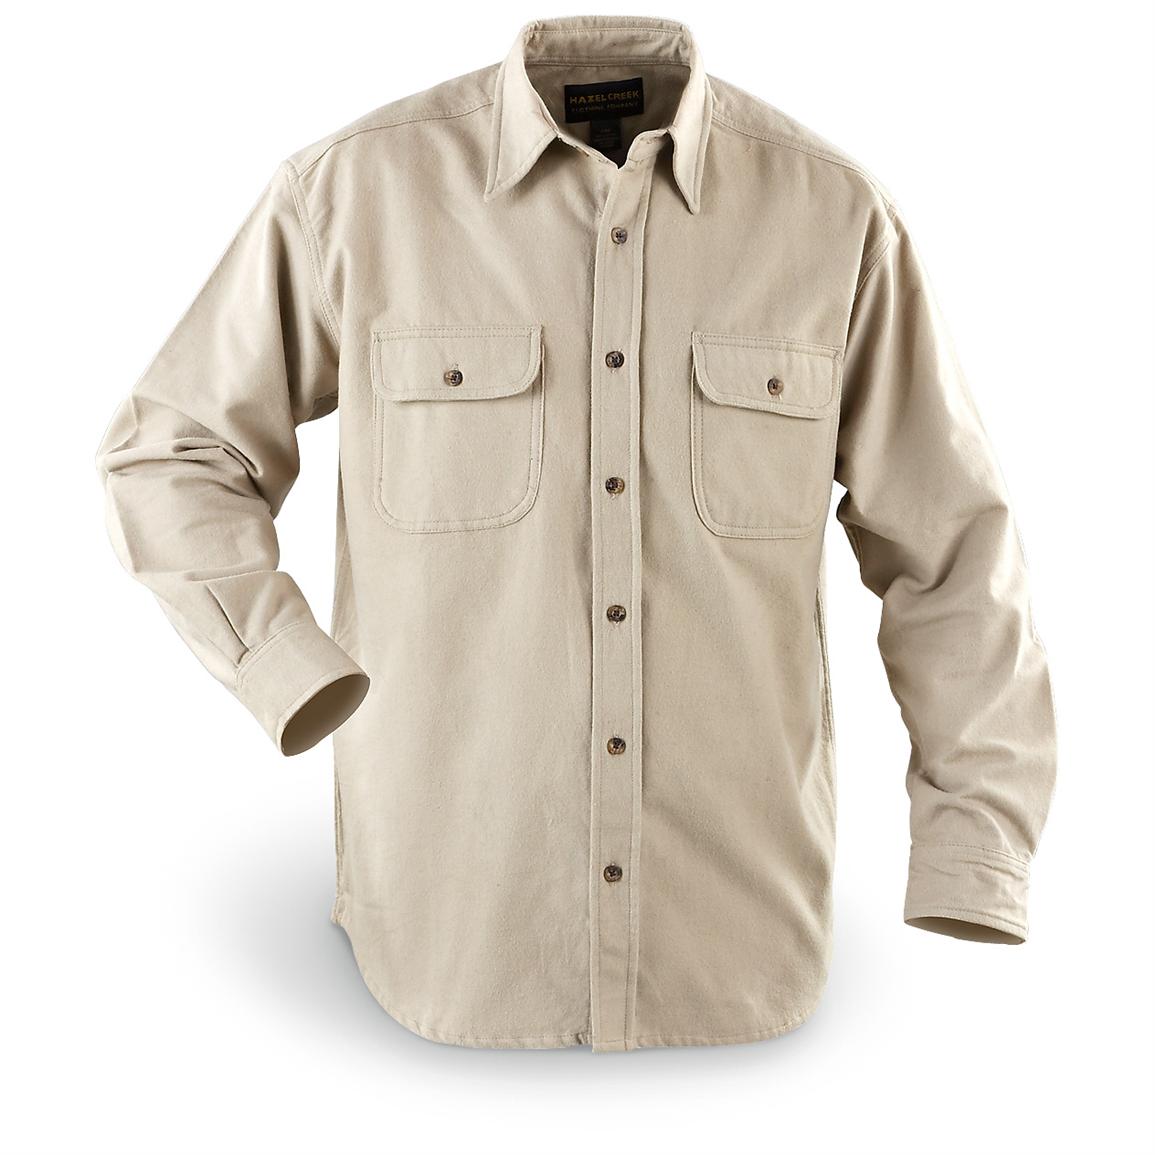 Flyshacker® Heavyweight Chamois Shirt, Tall Sizes - 146623, Shirts at ...